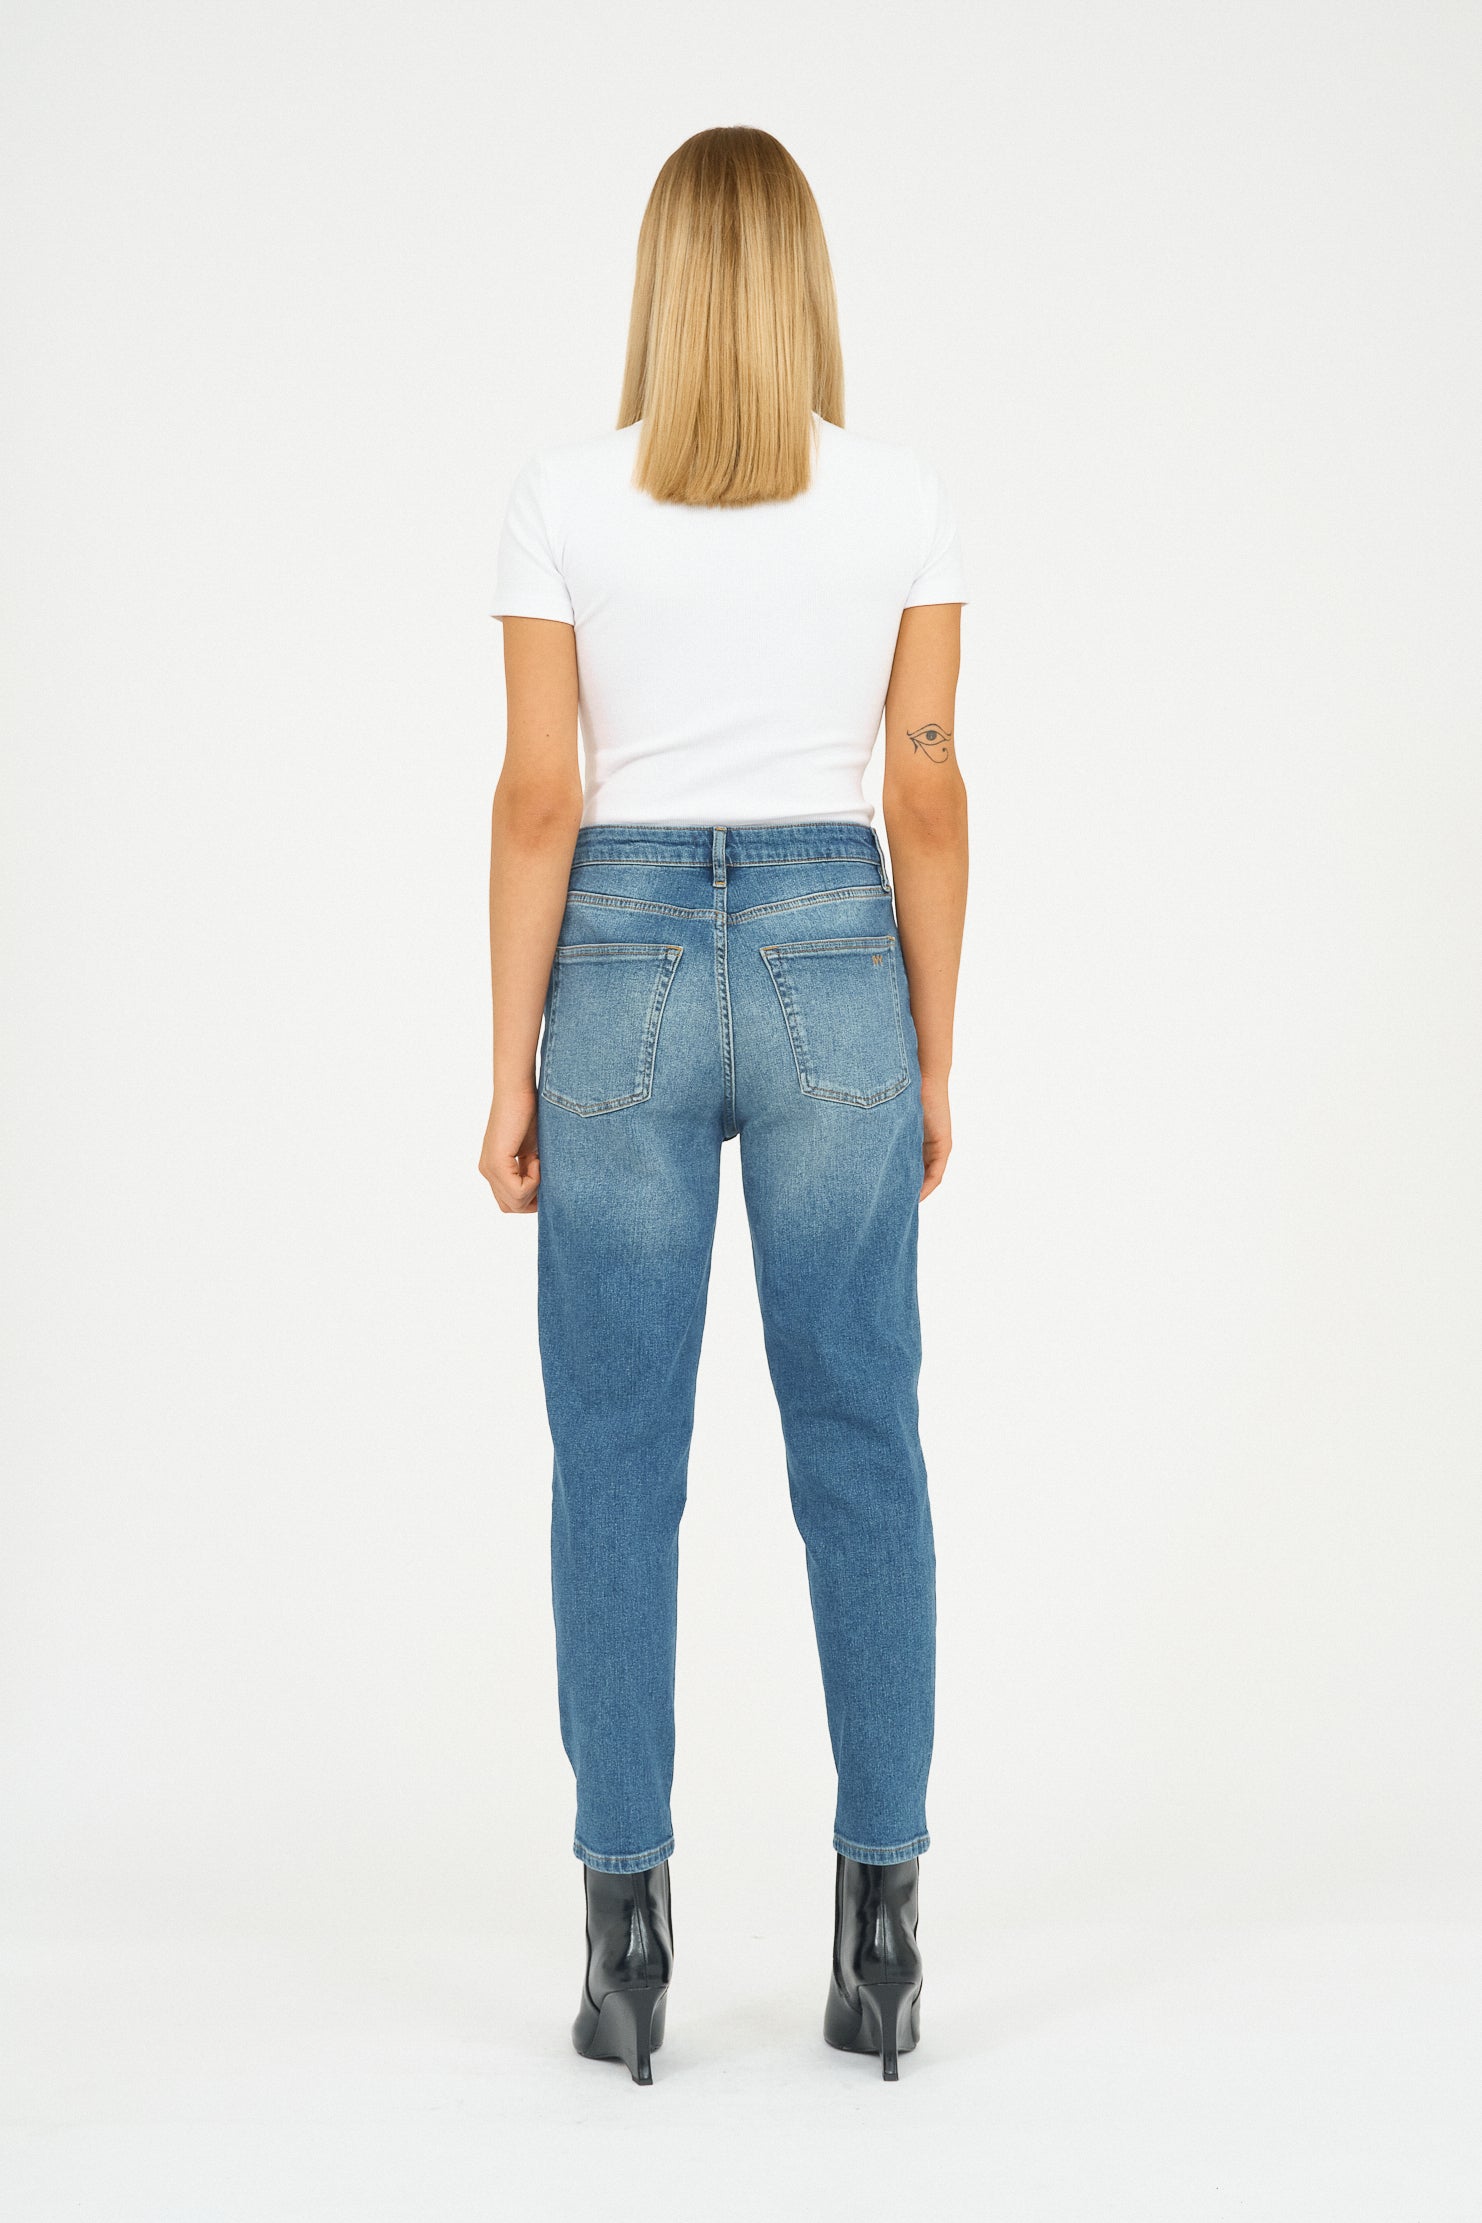 IVY Copenhagen IVY-Angie Jeans Wash Chicago Blue Jeans & Pants 51 Denim Blue